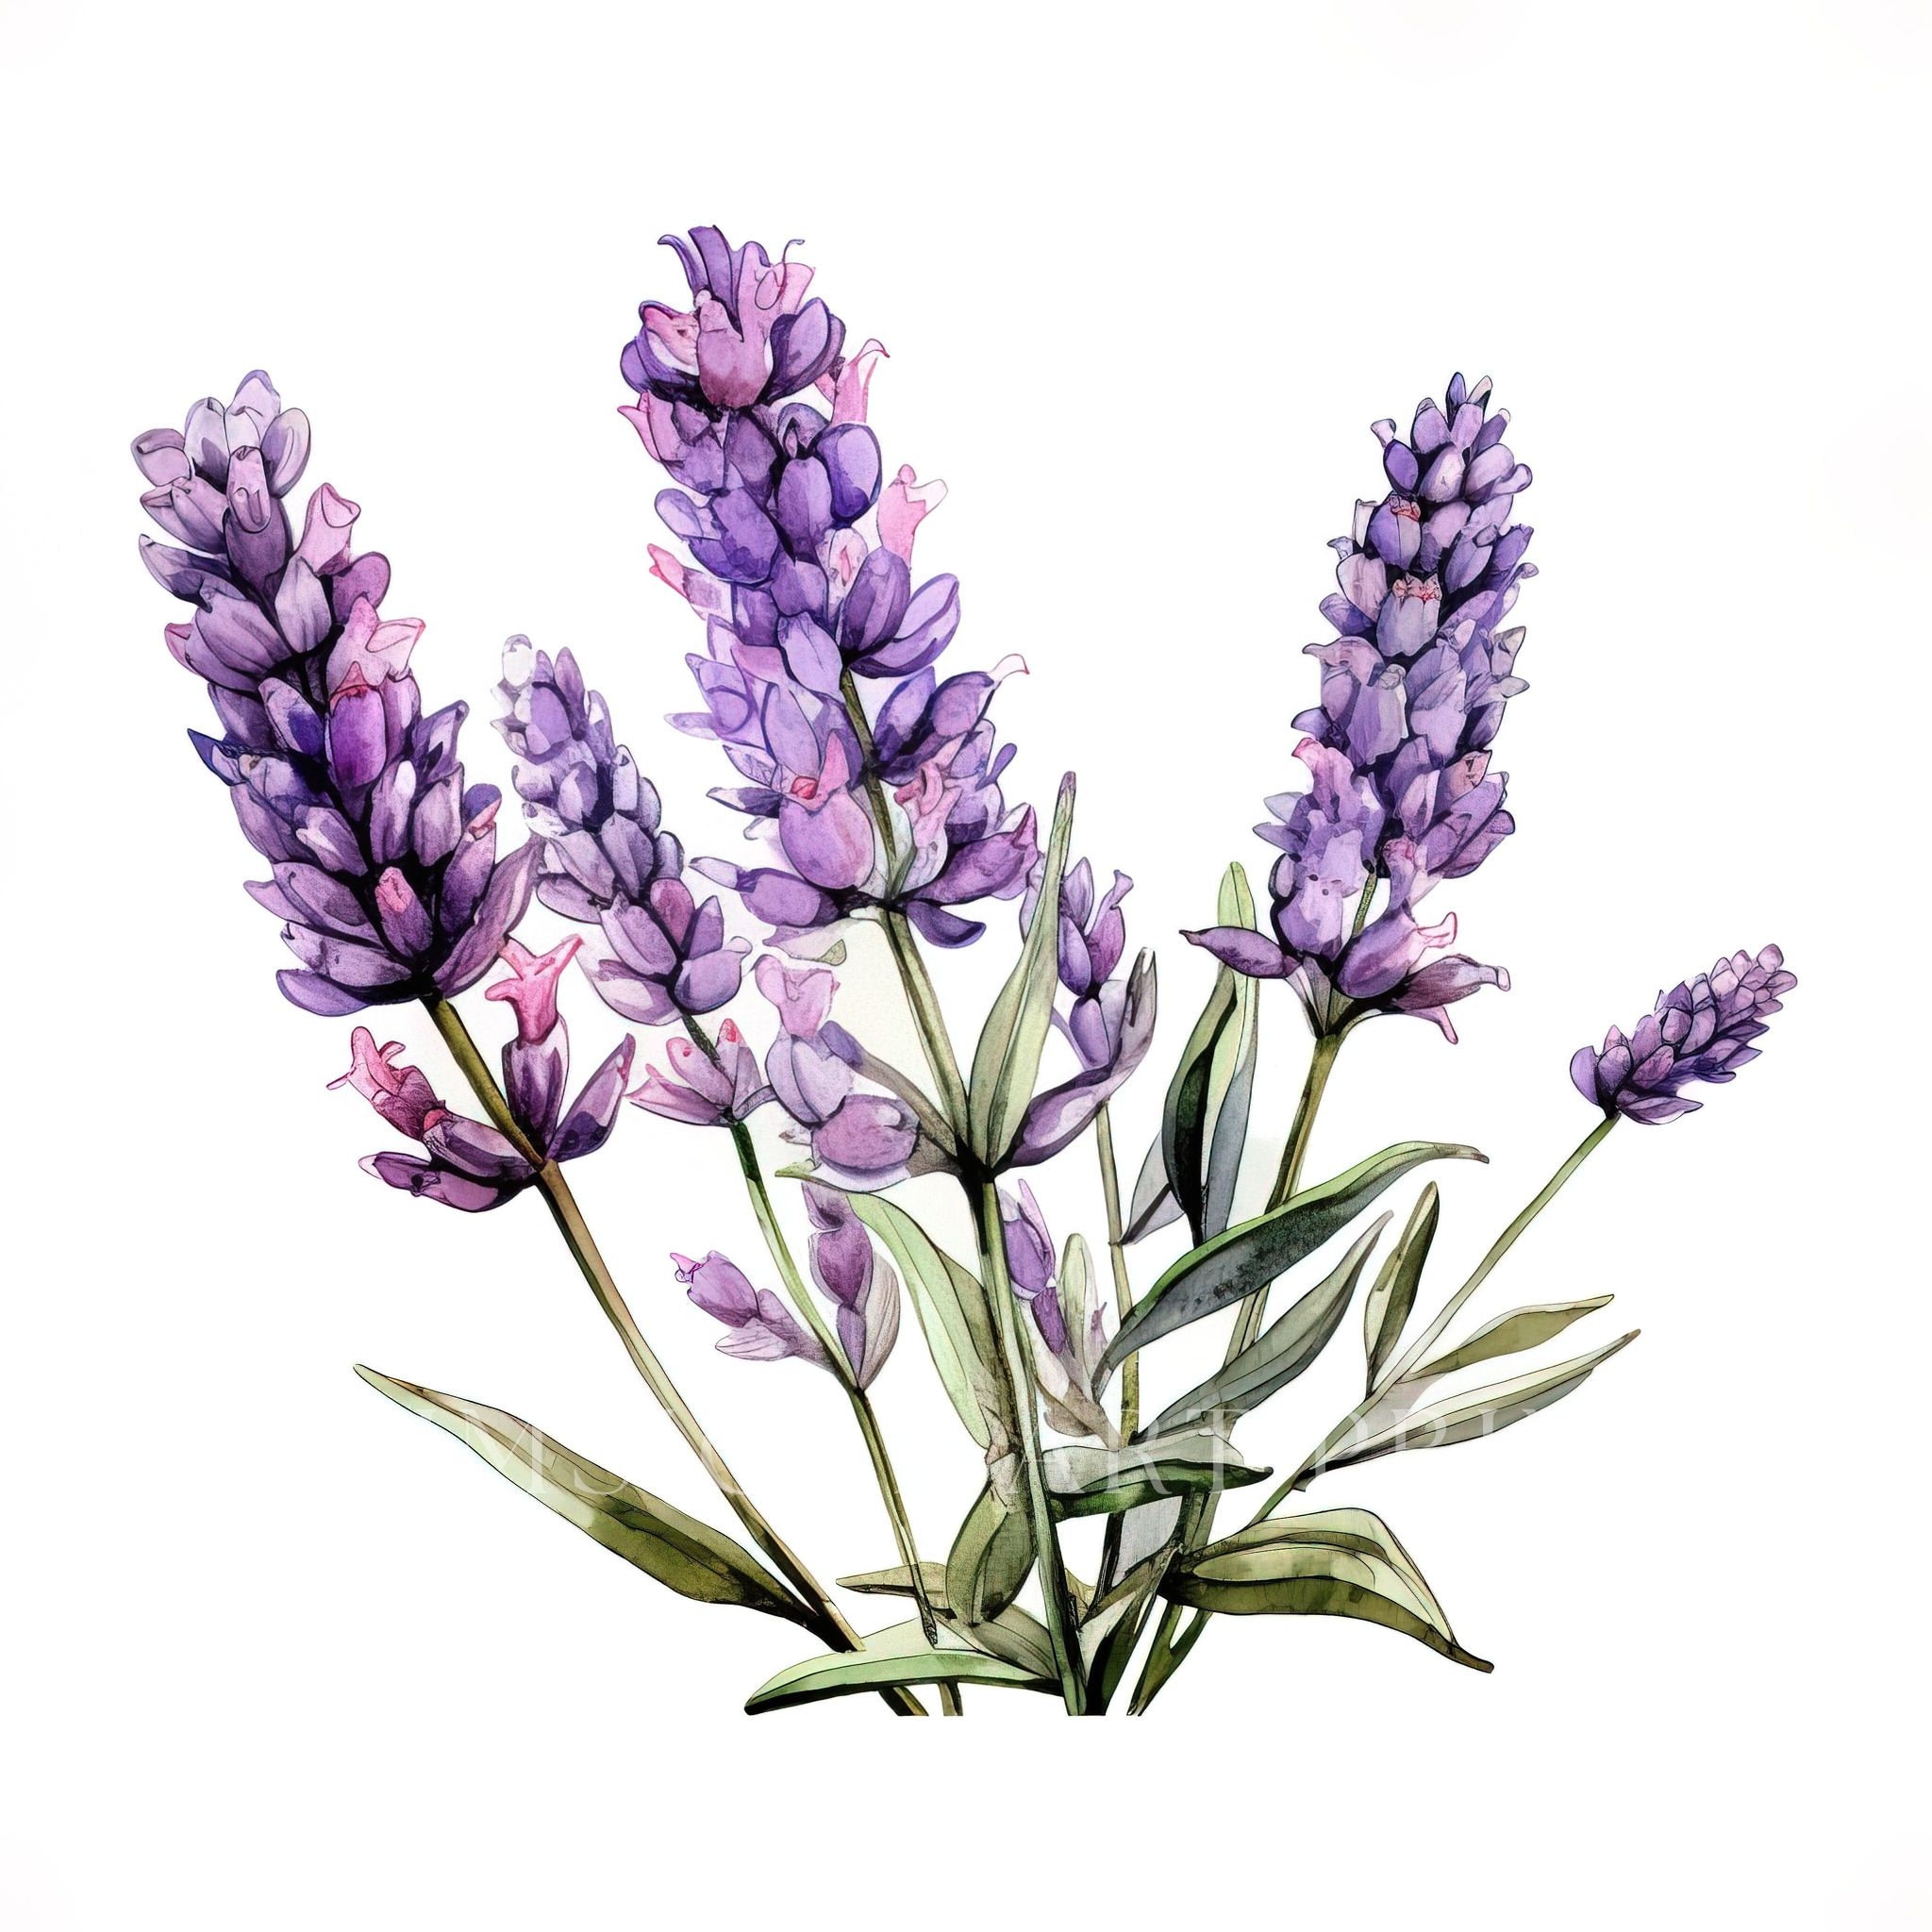 Lavender Clipart, Lavender Flower Clipart, Bridal Bouquet, Watercolor ...